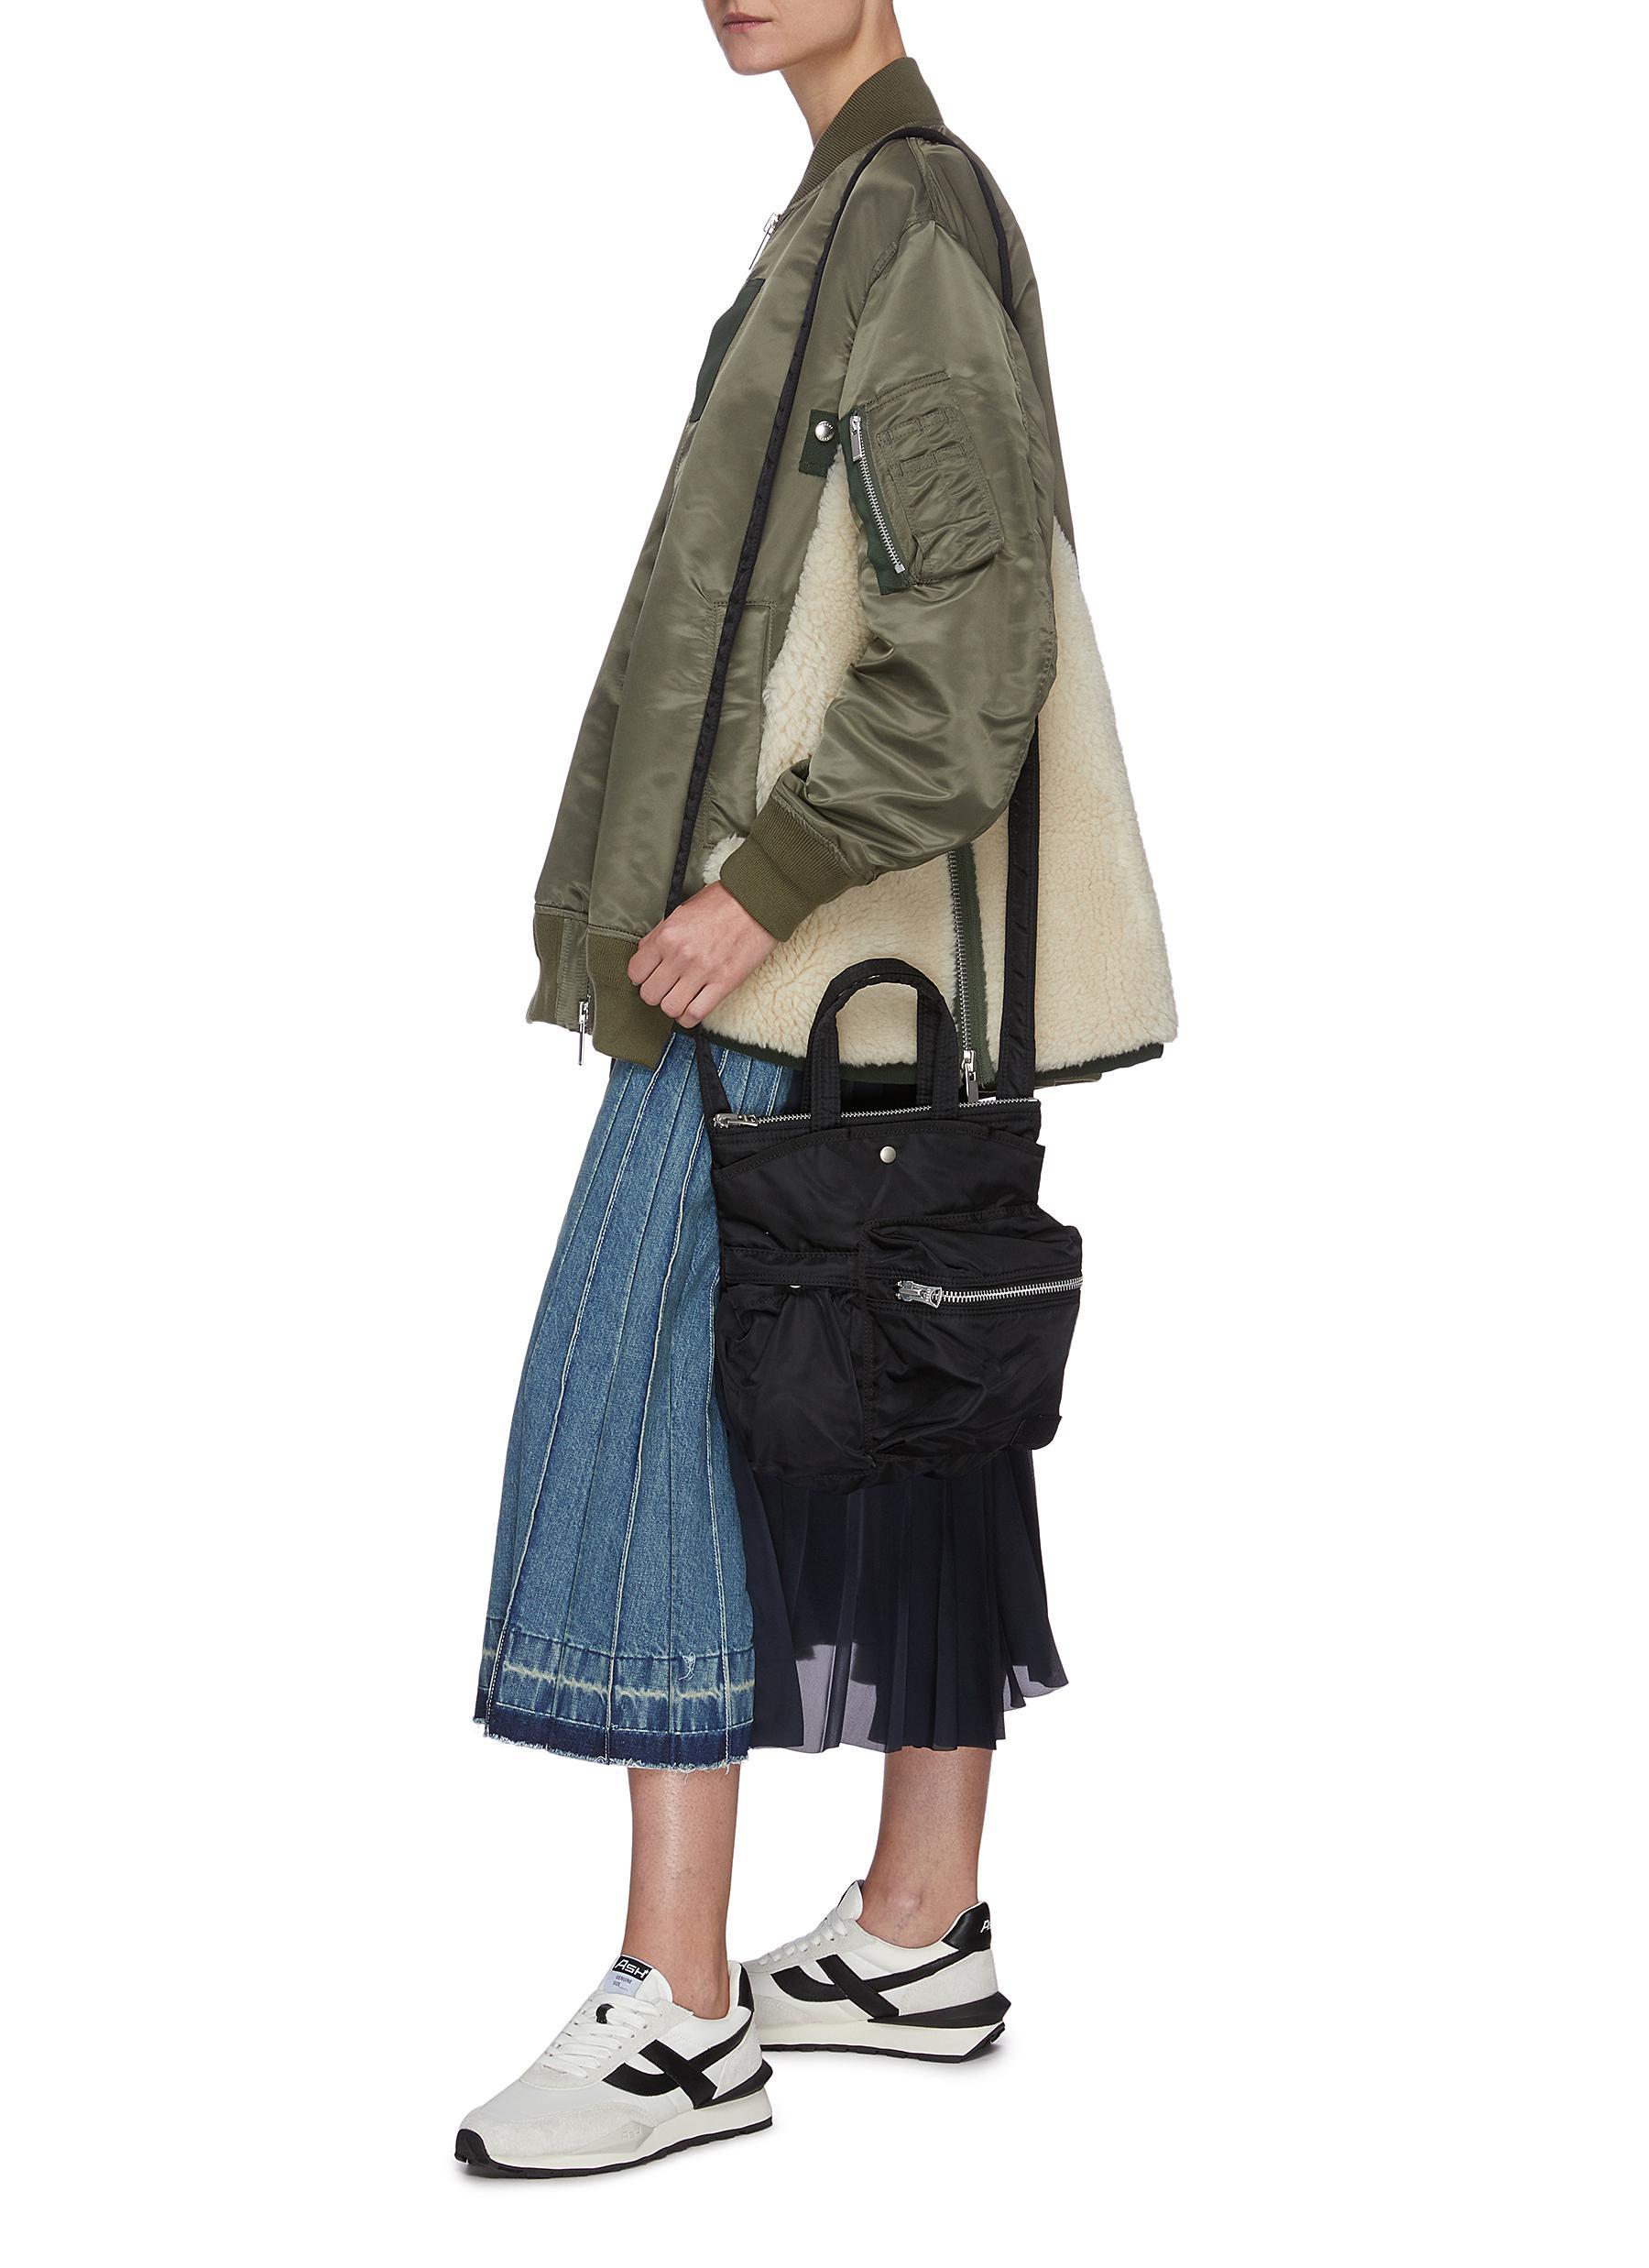 Sacai X Porter Yoshida & Co. Zip Pocket Nylon Crossbody Bag in